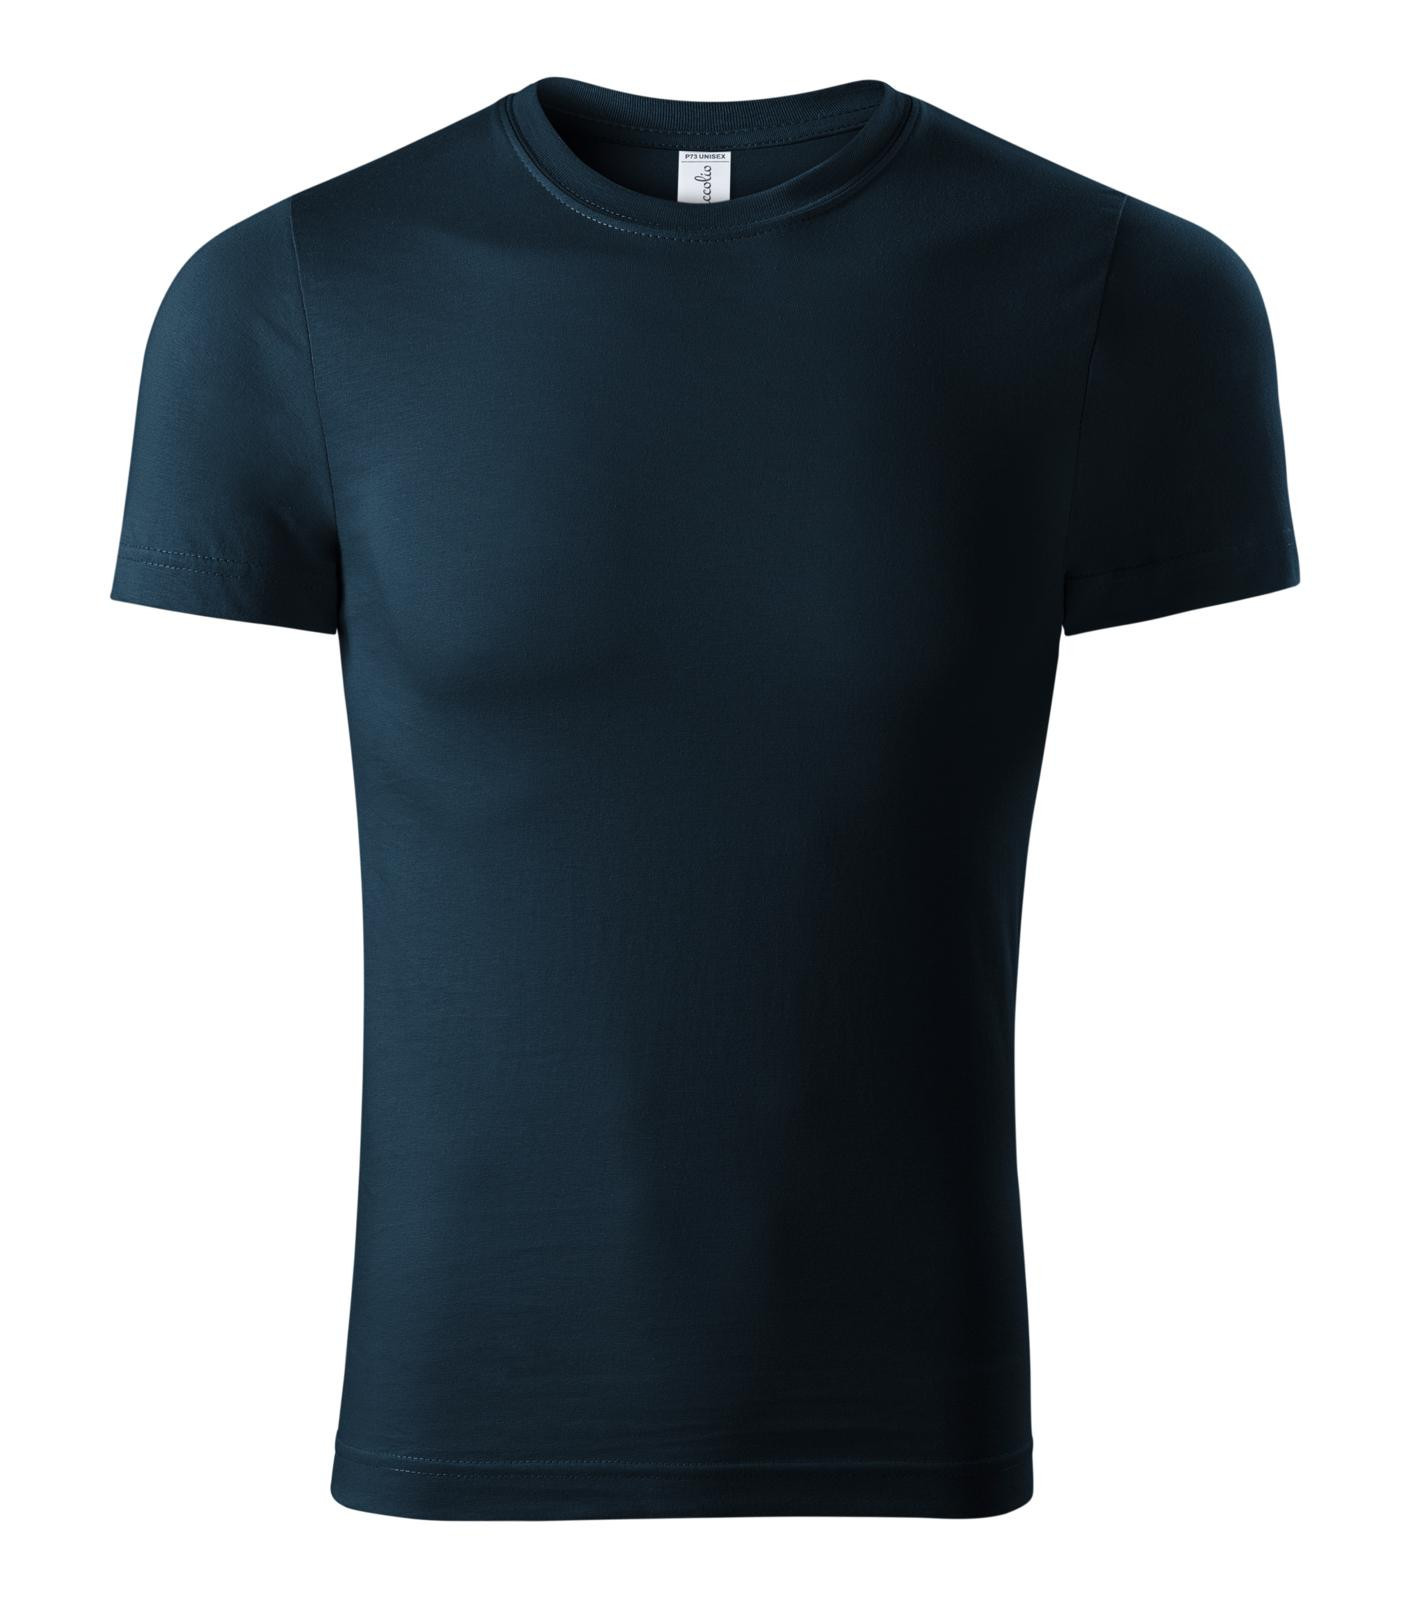 Unisex tričko Piccolio Paint P73 - veľkosť: S, farba: tmavo modrá